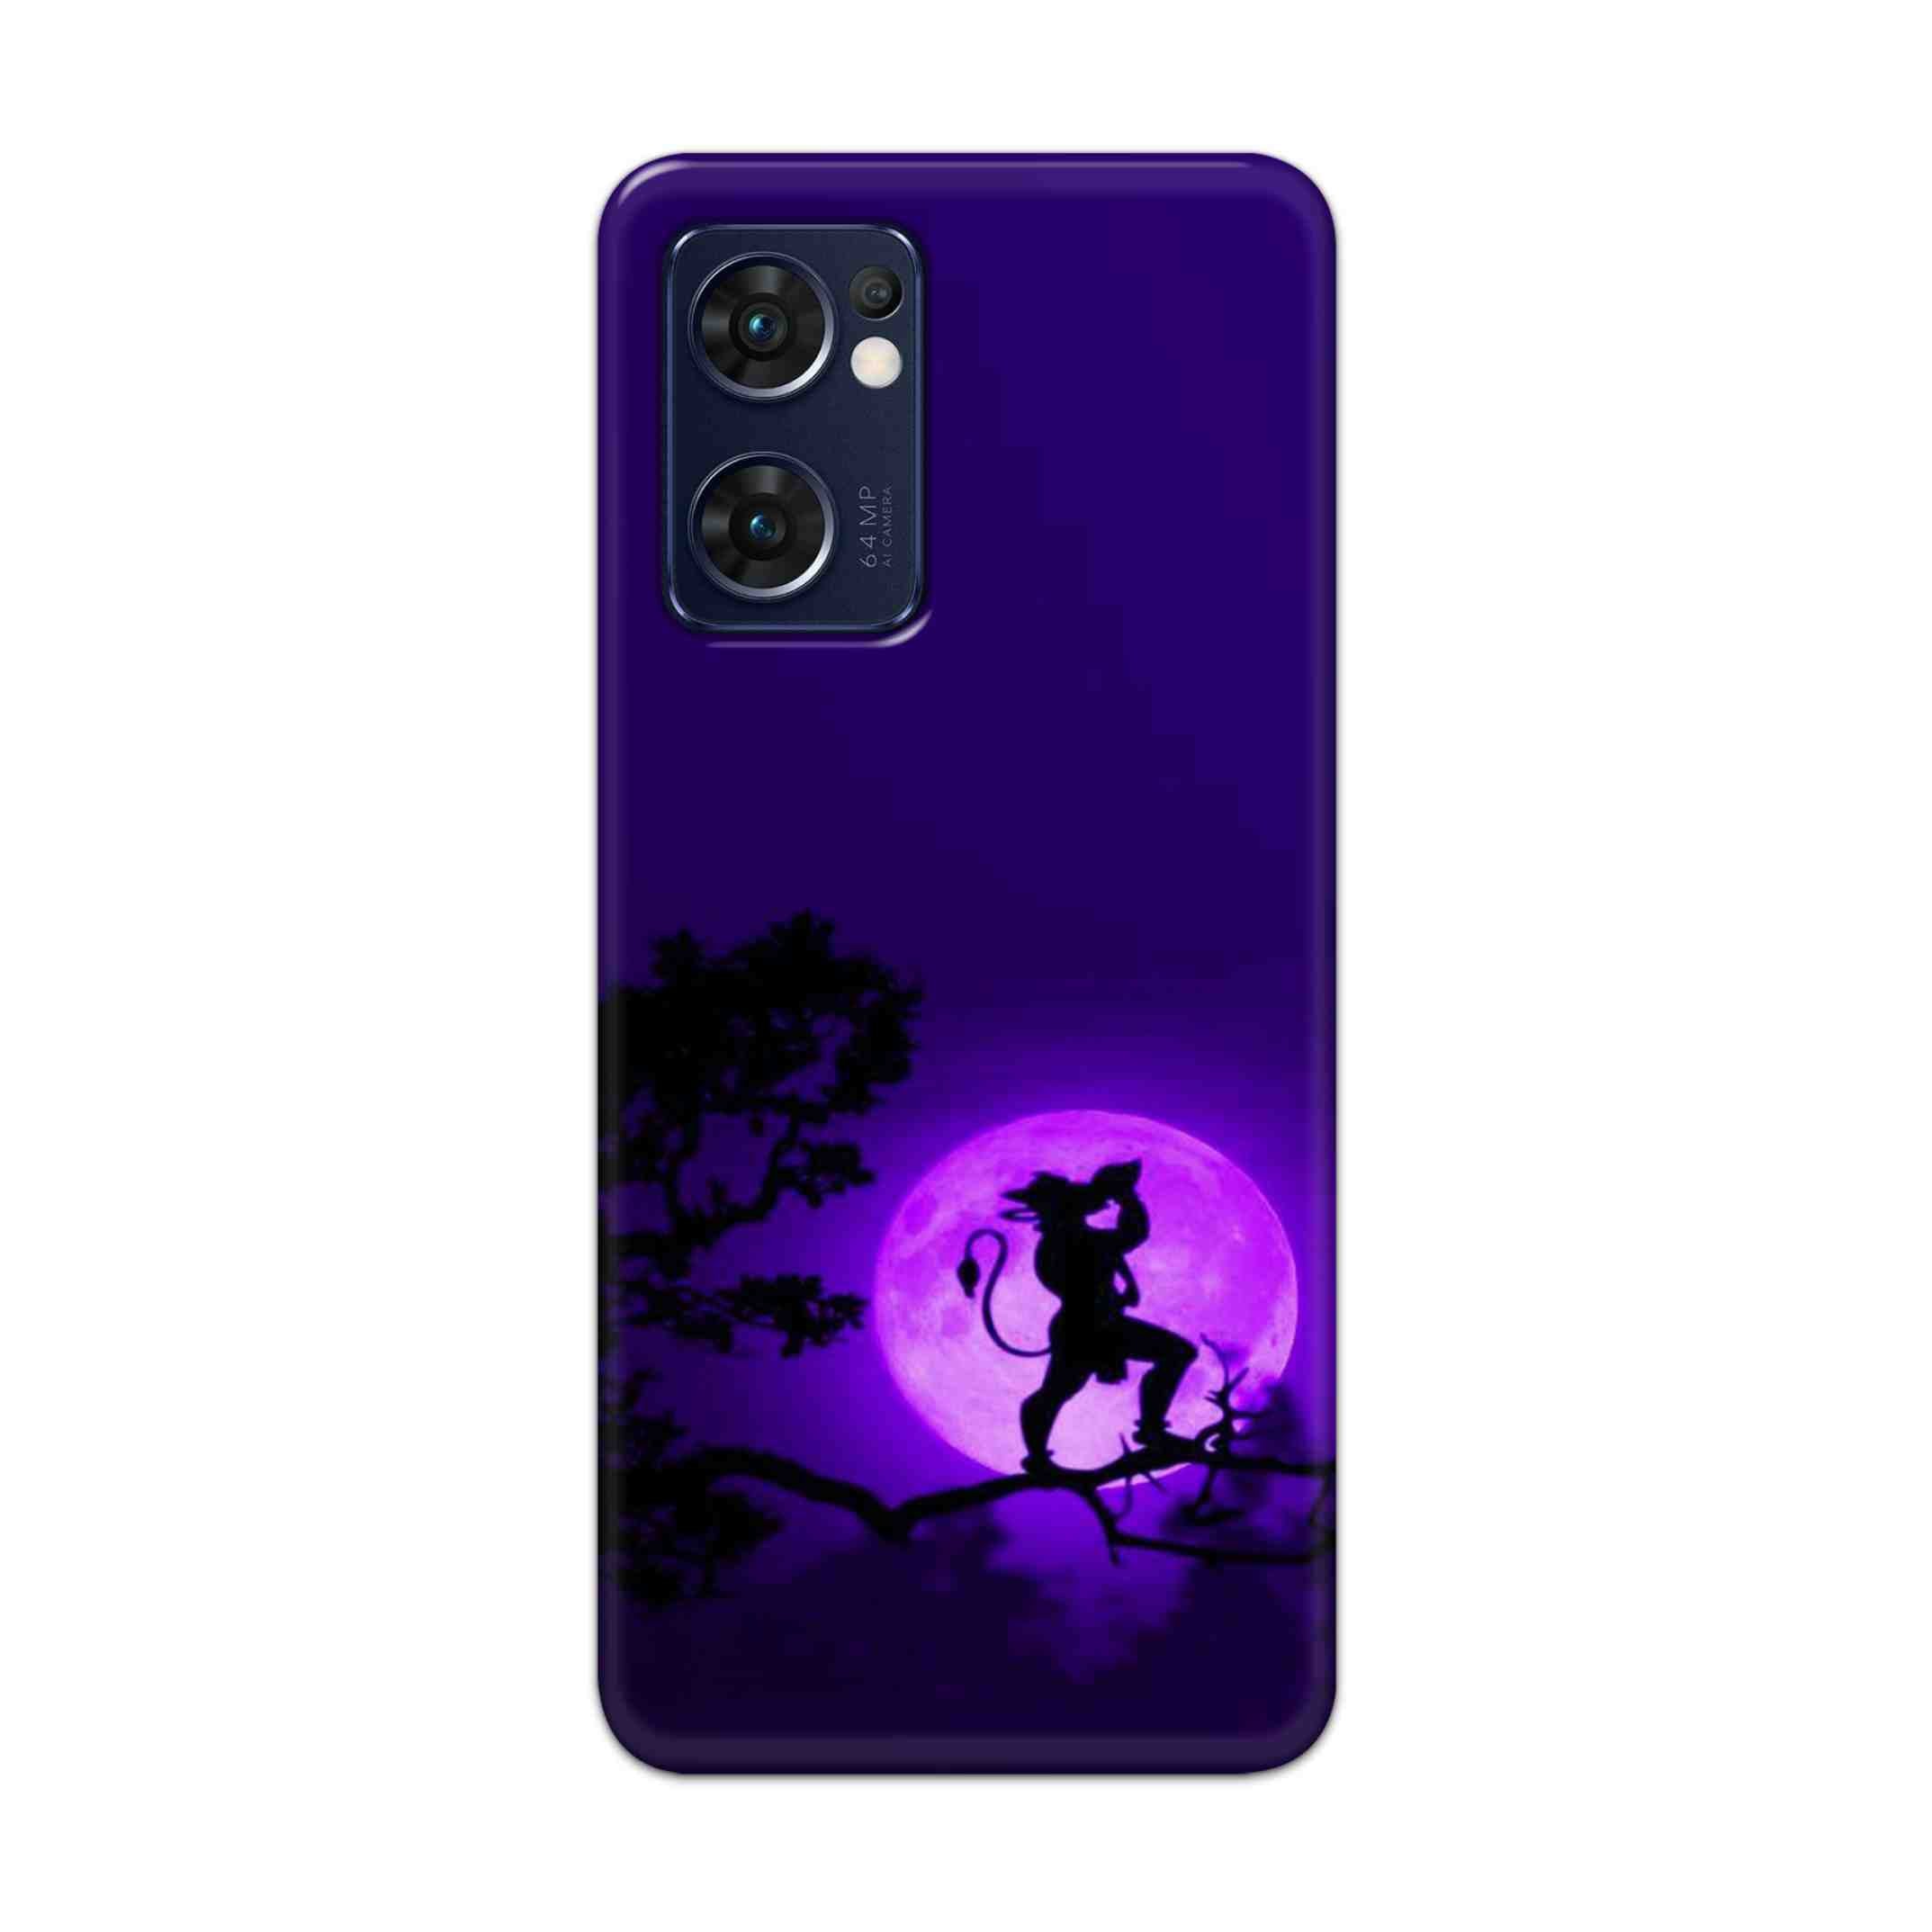 Buy Hanuman Hard Back Mobile Phone Case Cover For Reno 7 5G Online